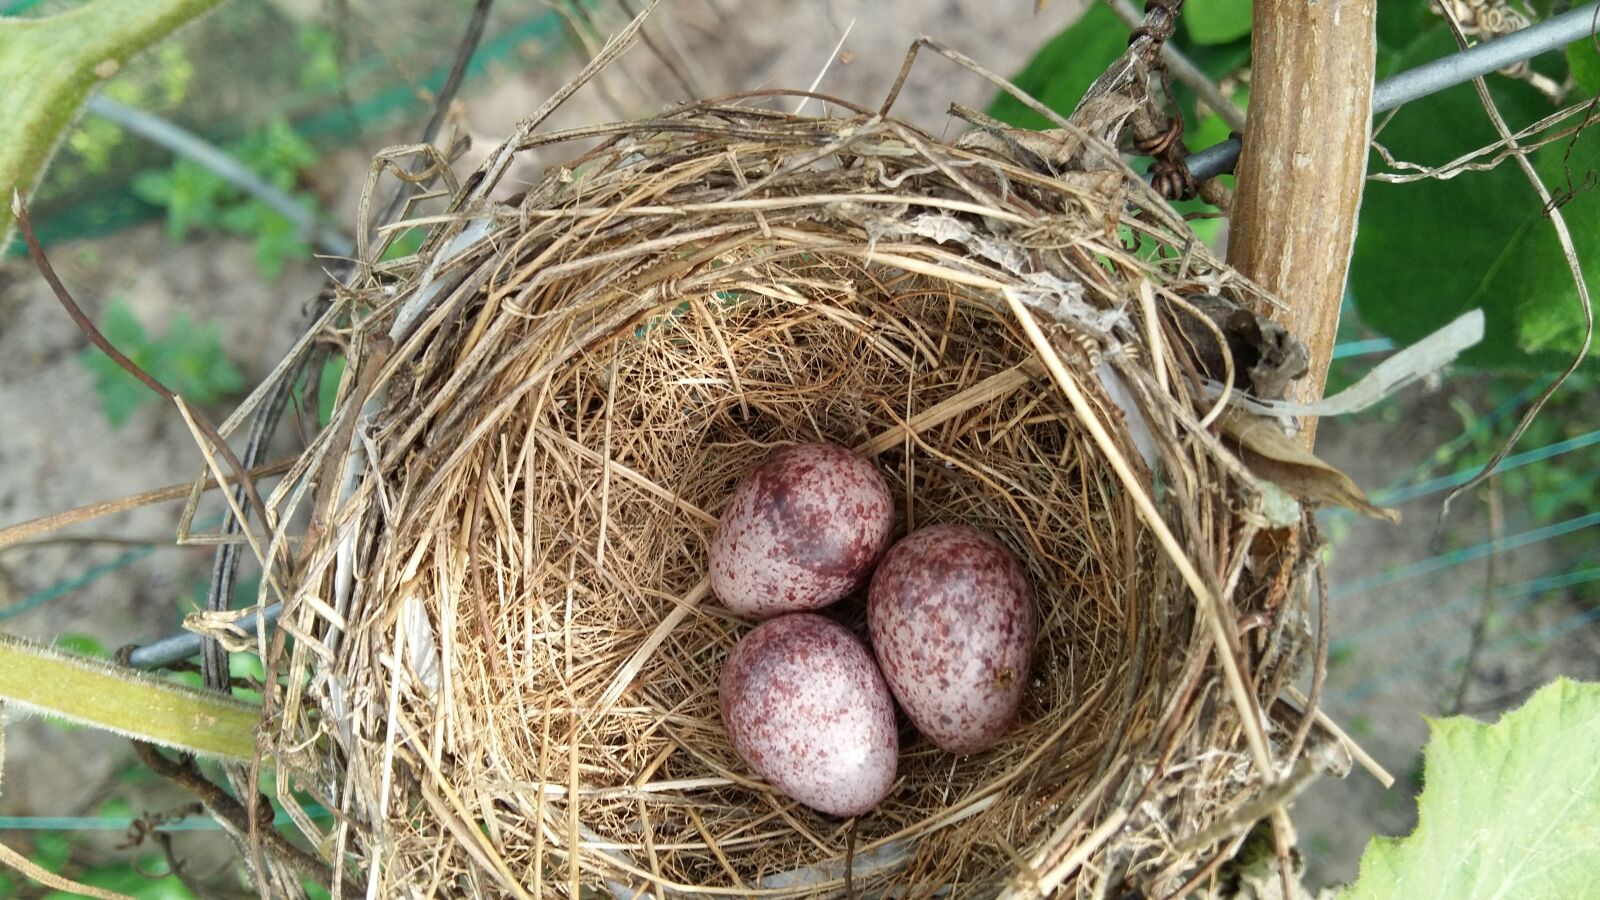 Samsung Galaxy A7 sample photo. Bird, bird eggs, eggs photography